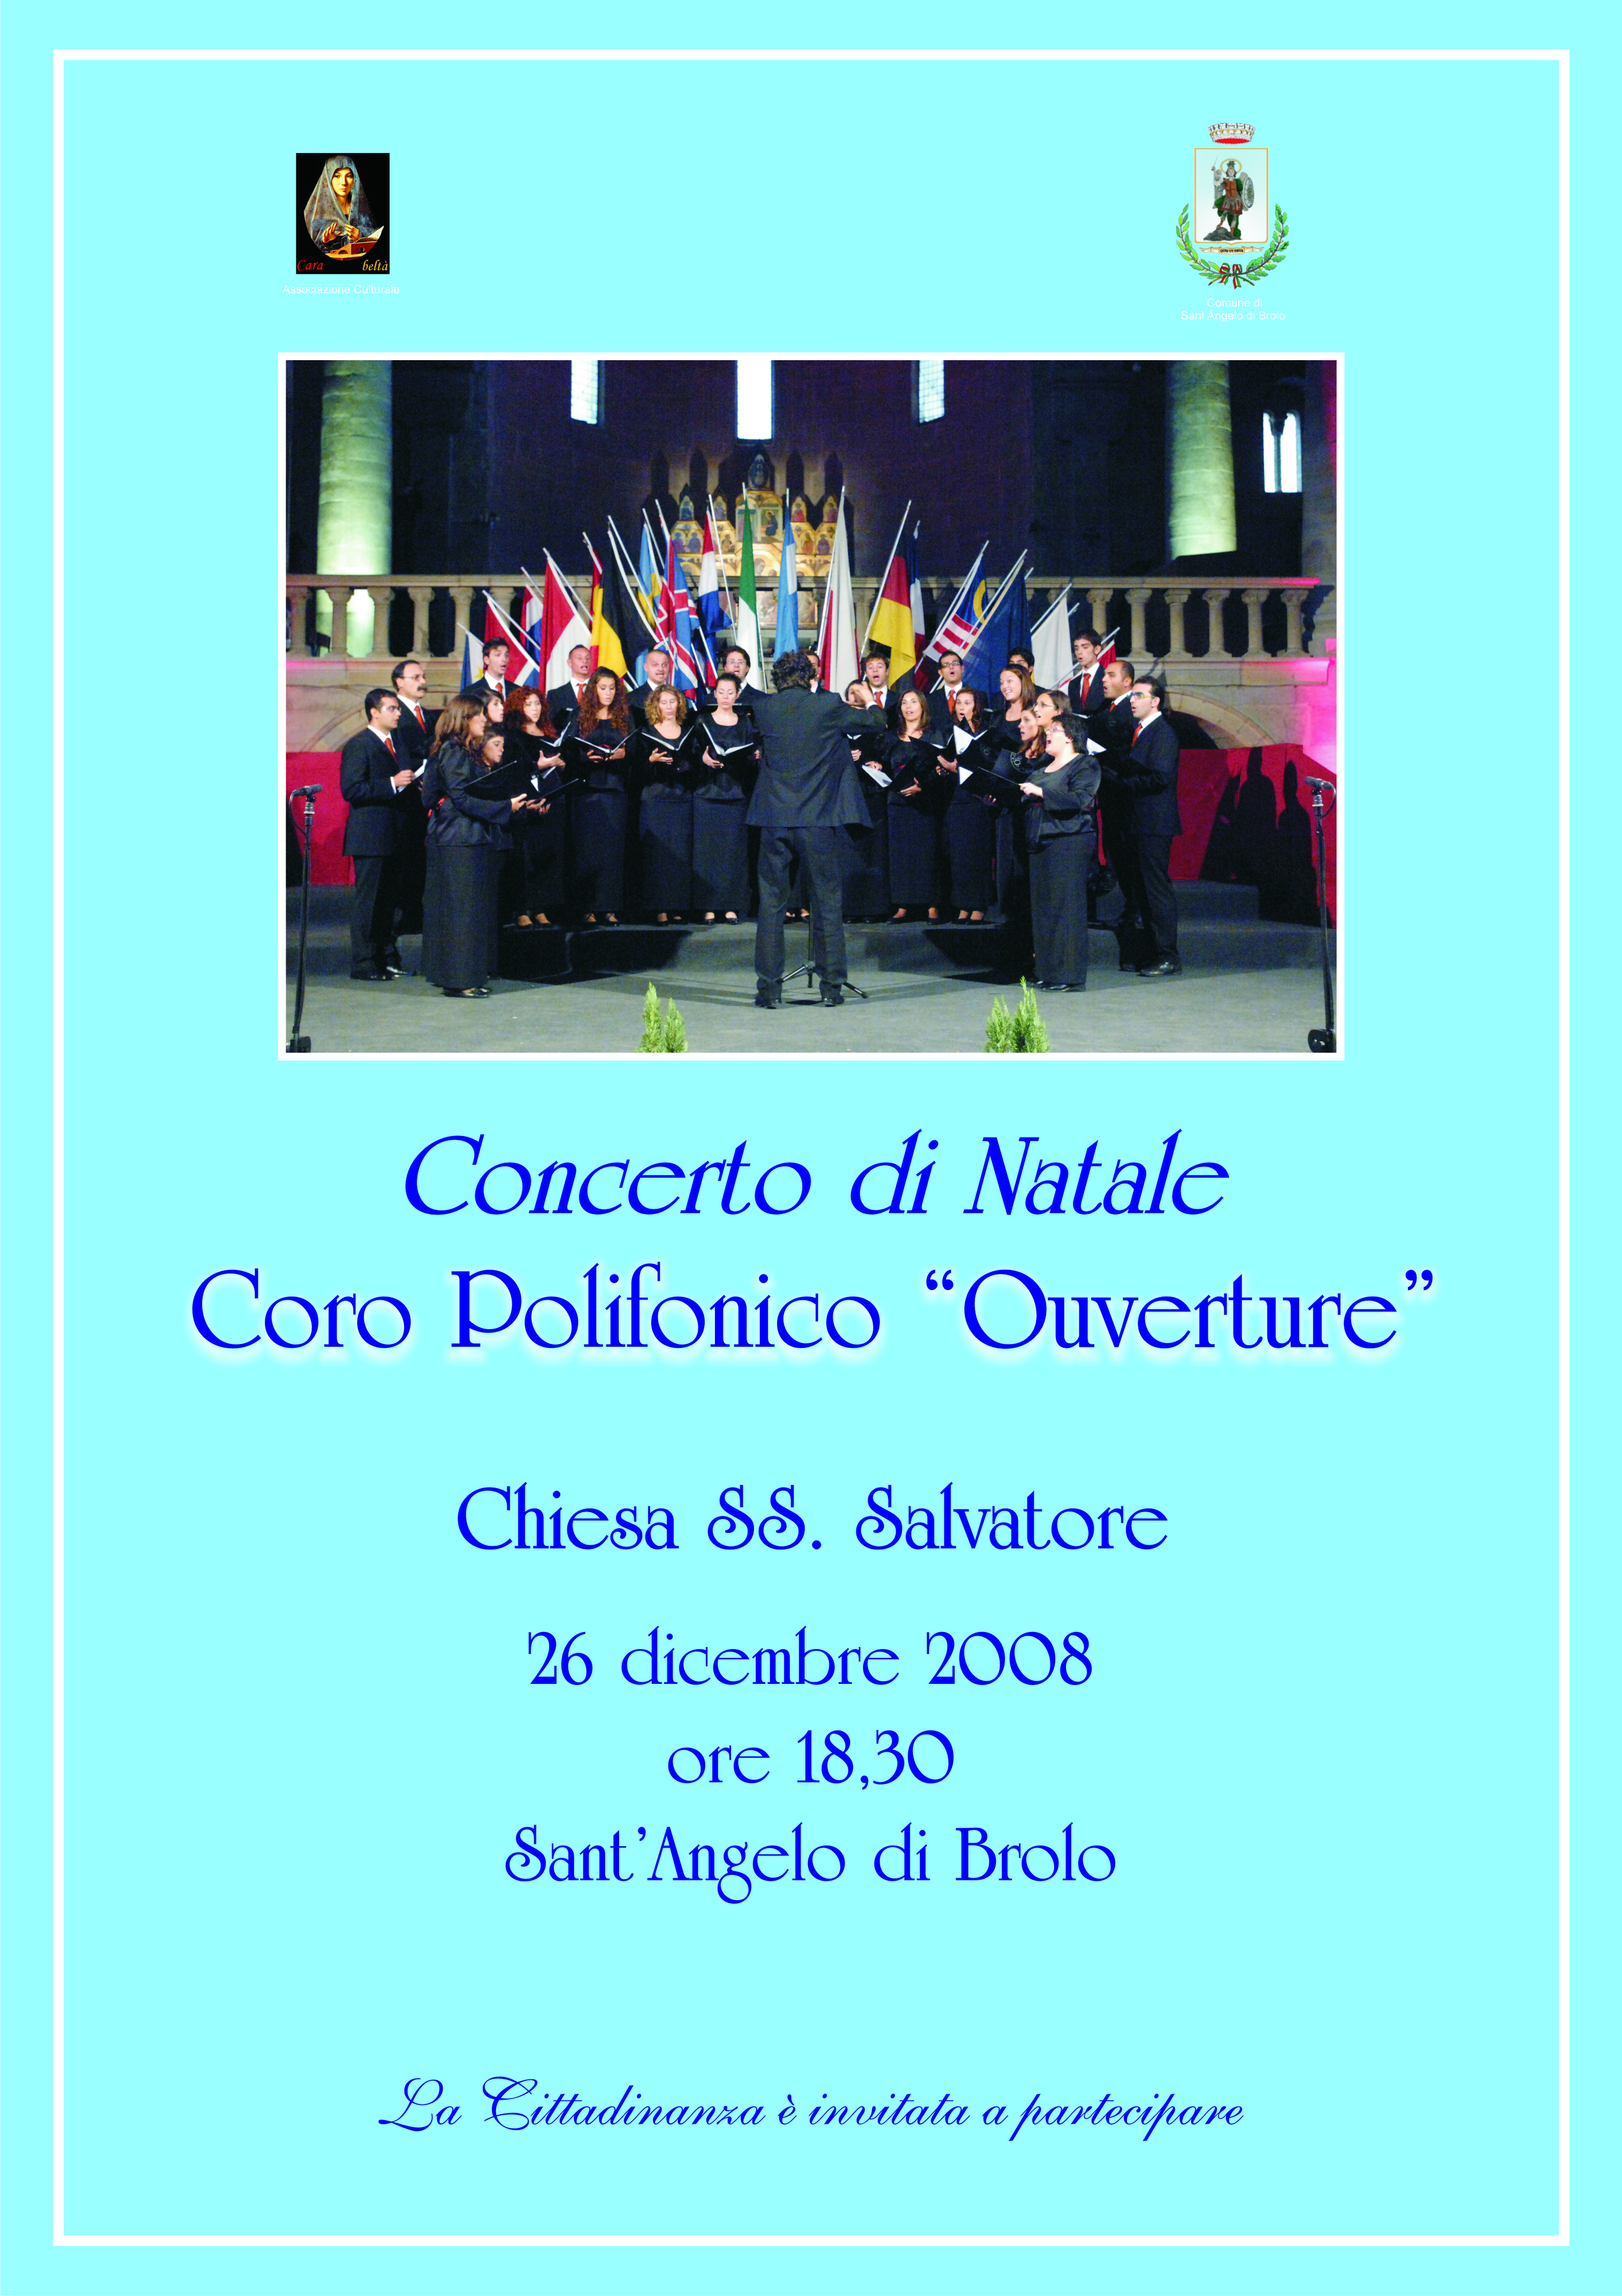 Concerto di Natale Coro Polifonico Ouverture